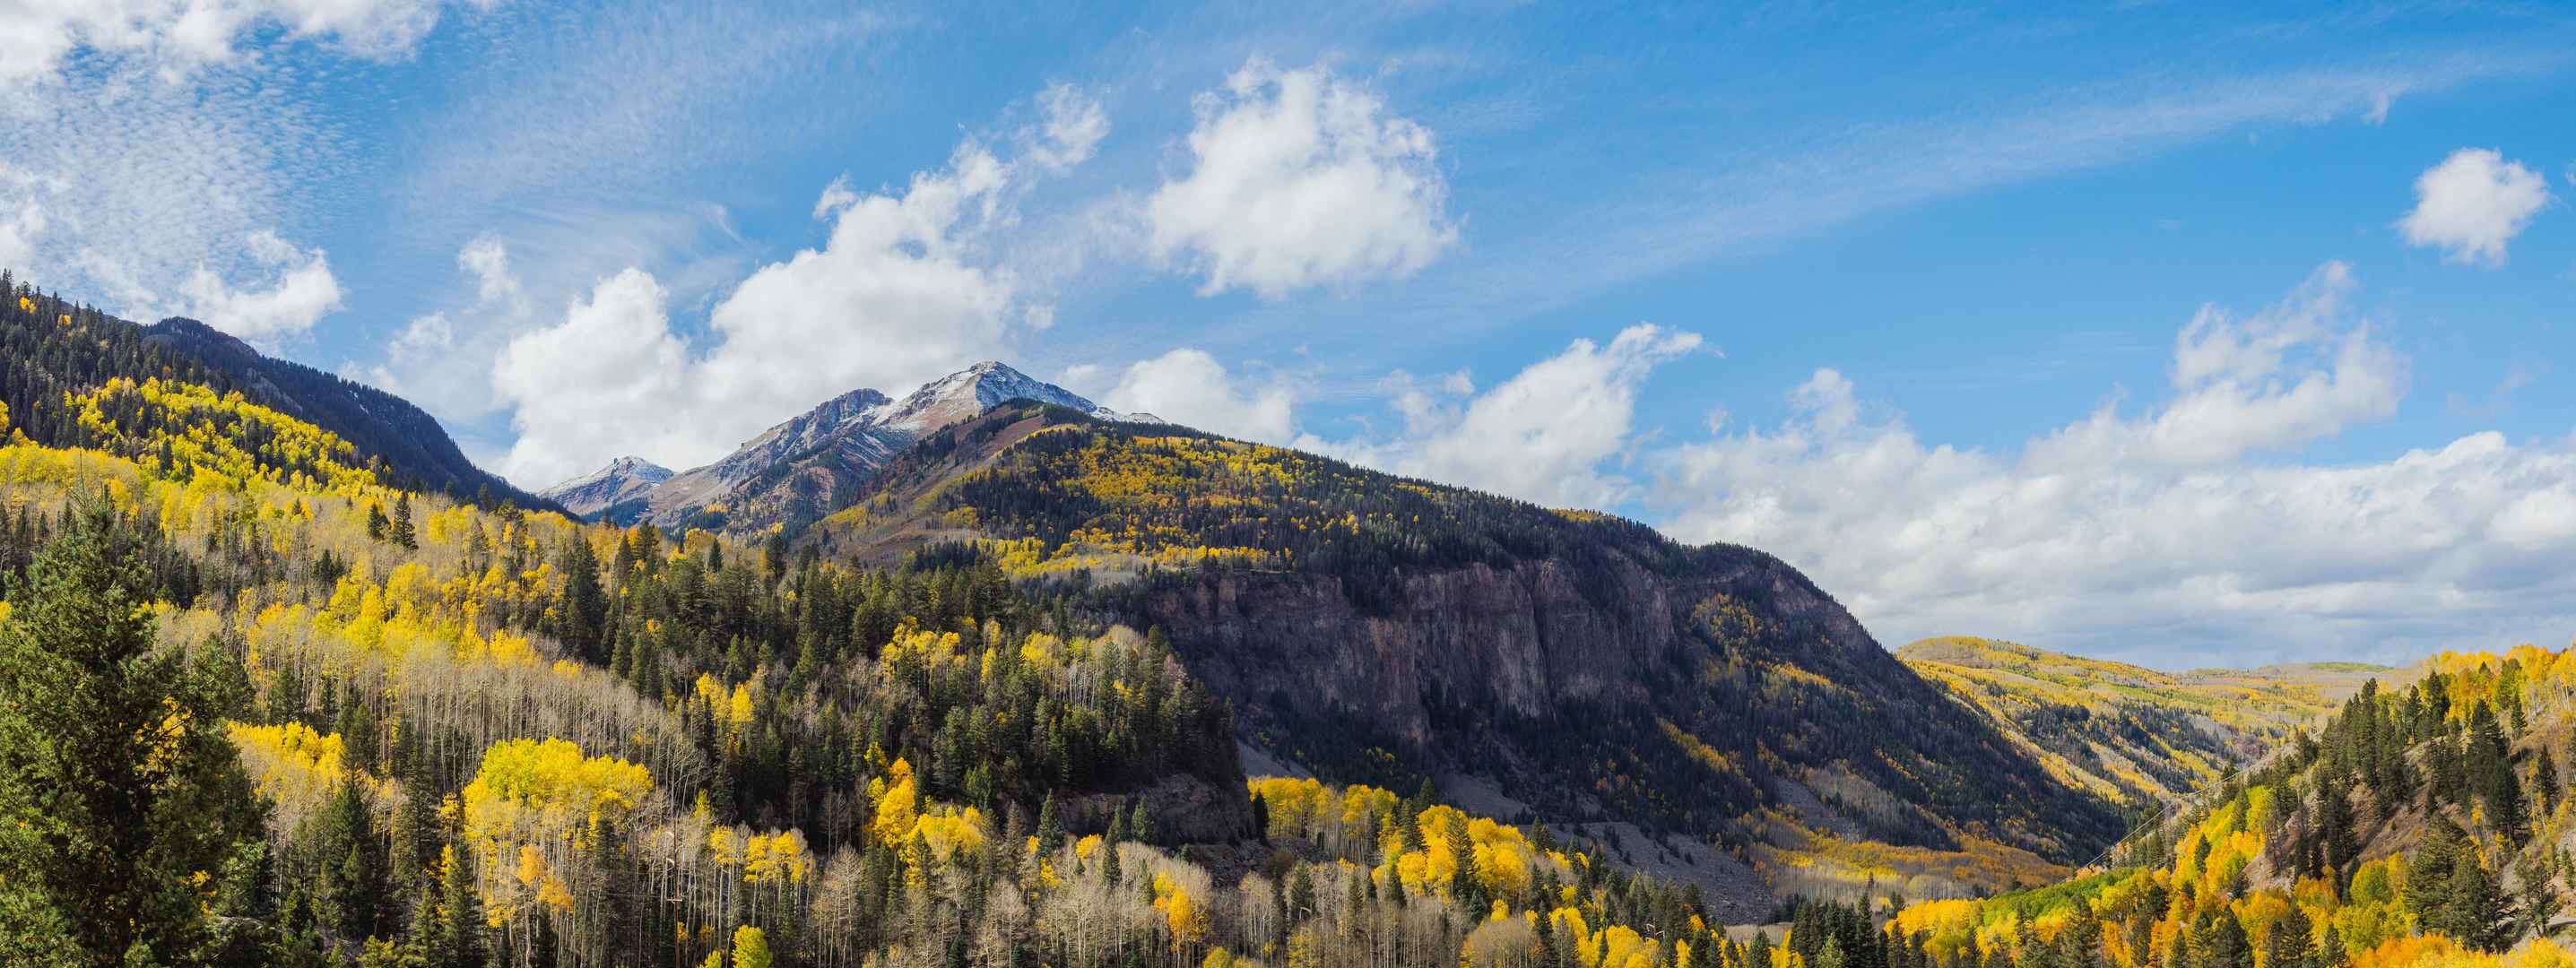 科罗拉多州美国森林山风景自然8K壁纸-